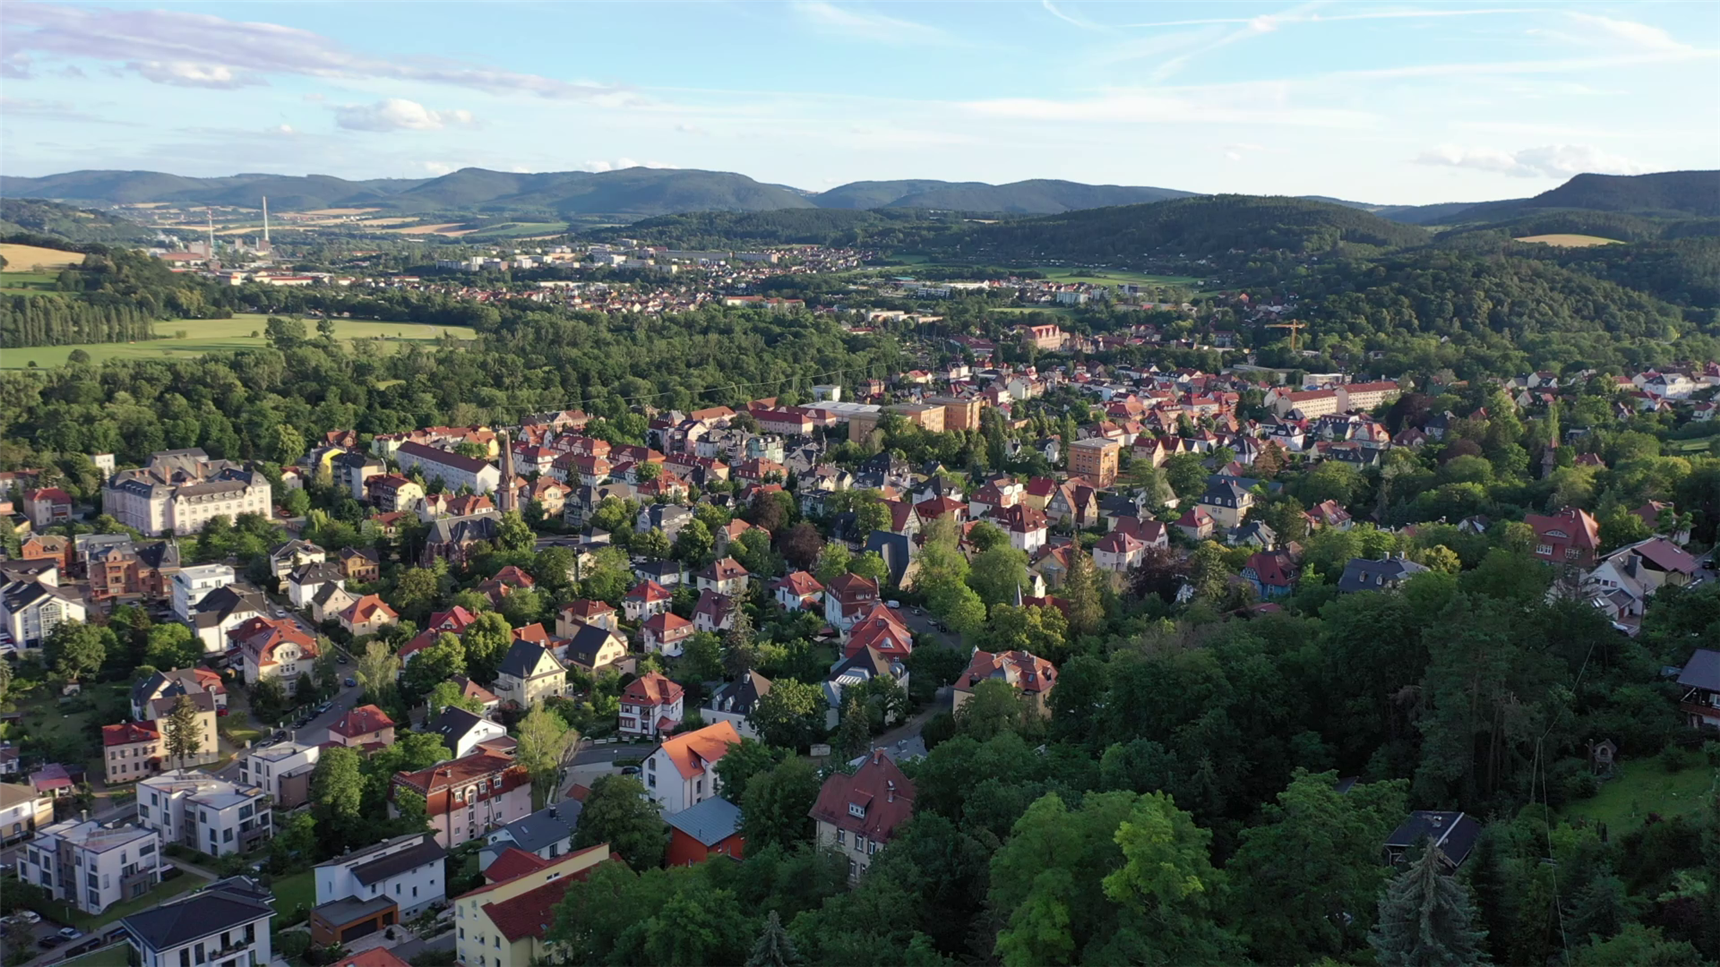 Blick von oben über die Stadtsilhouette Rudolstadts (© Caritas Trägergesellschaft "St. Elisabeth" gGmbH)